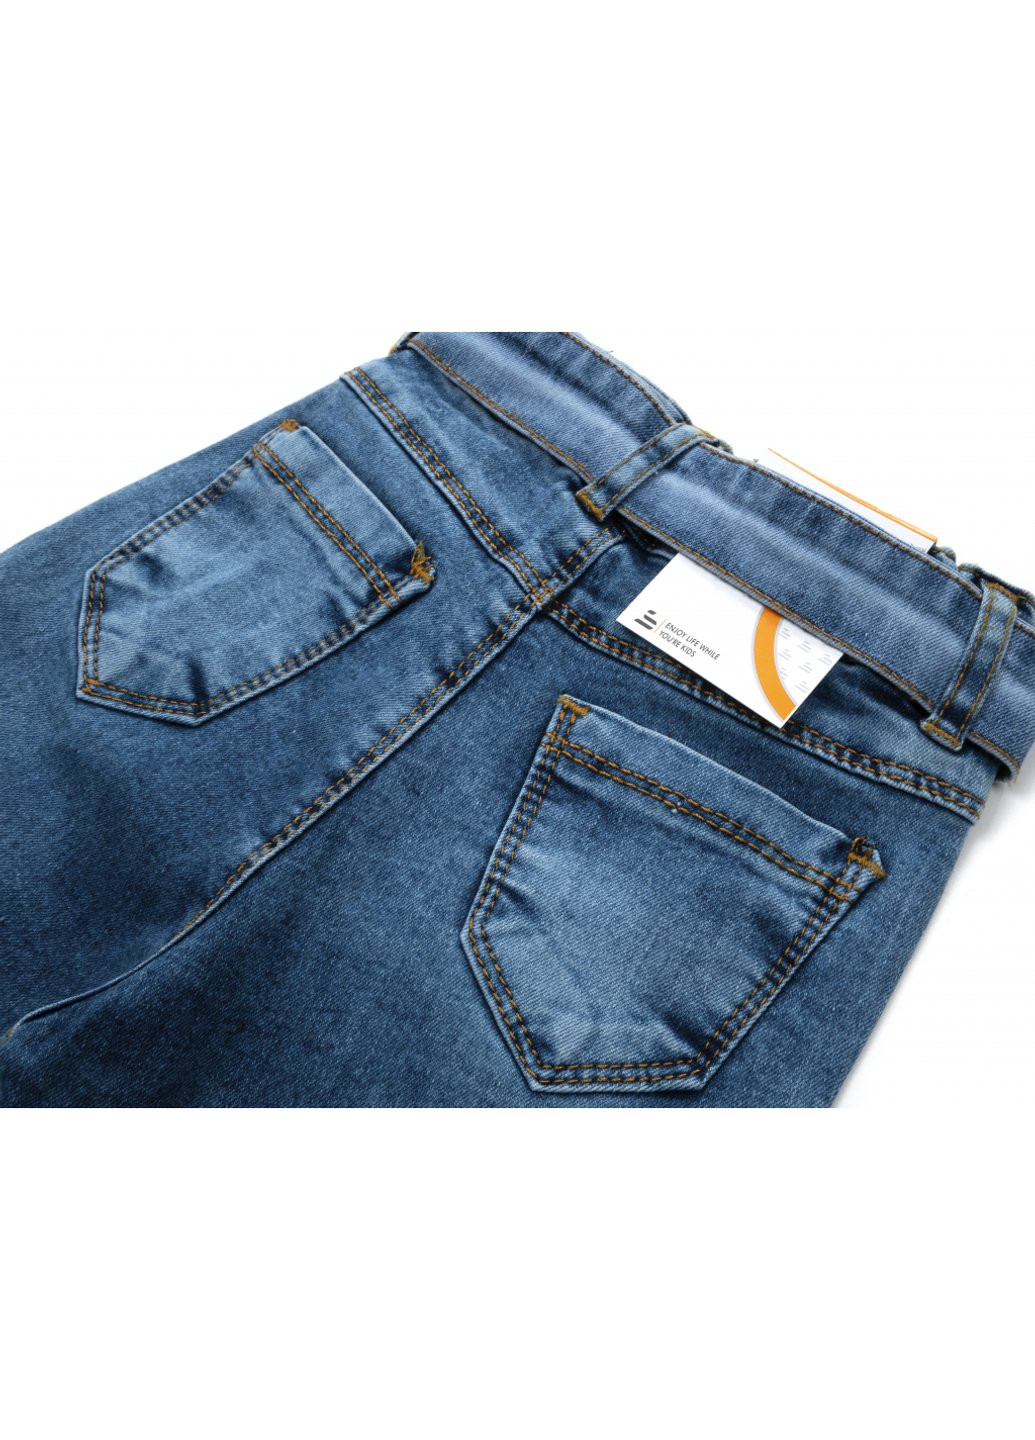 Голубые демисезонные джинсы с поясом (58162-98g-blue) Sercino